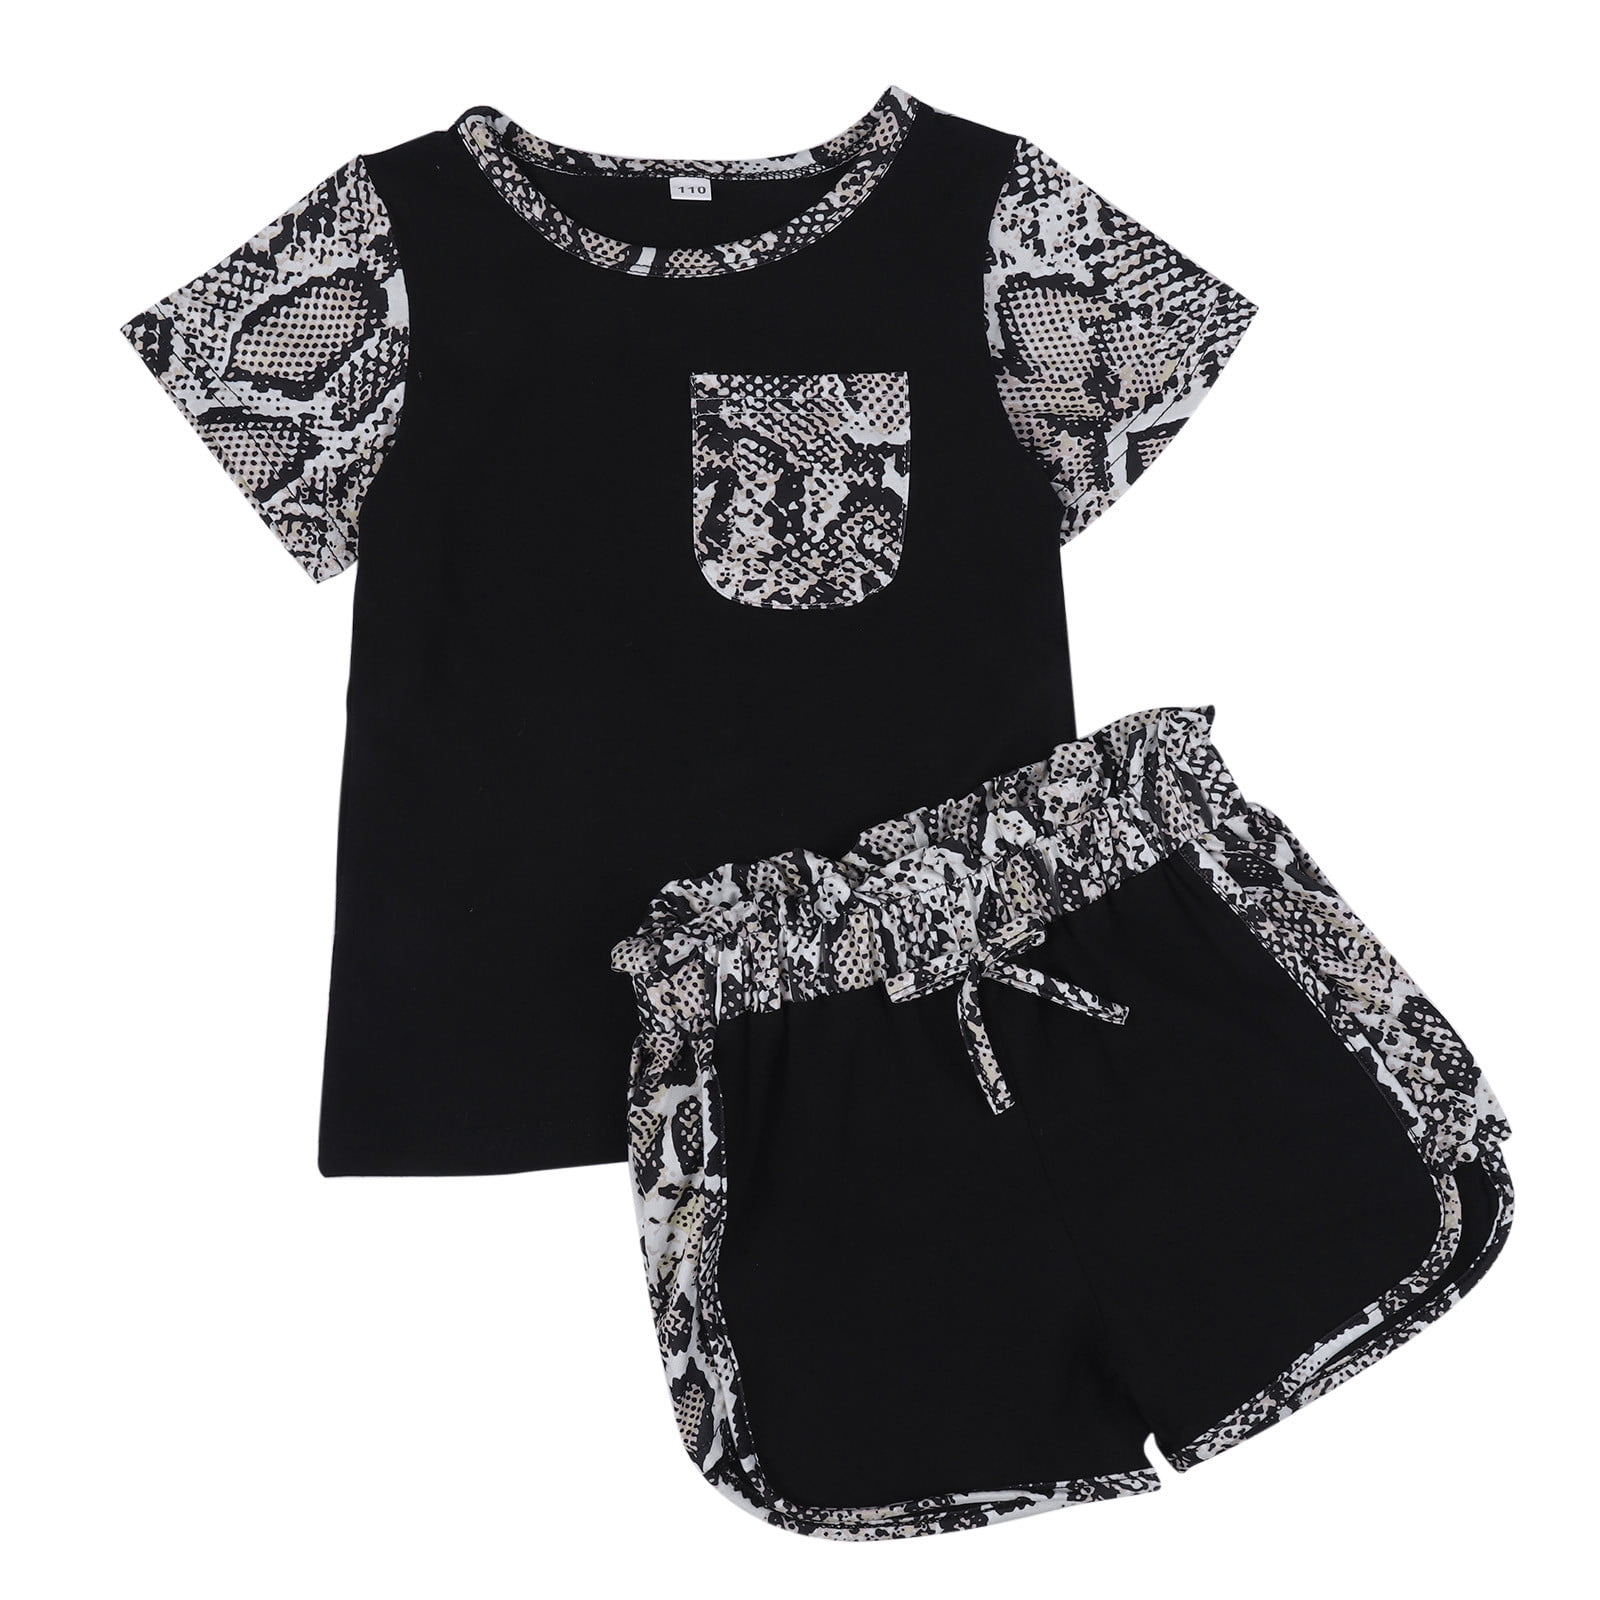 Akiihool Shorts Sets for Girl Toddler Girl Shirt Short Pants Sets